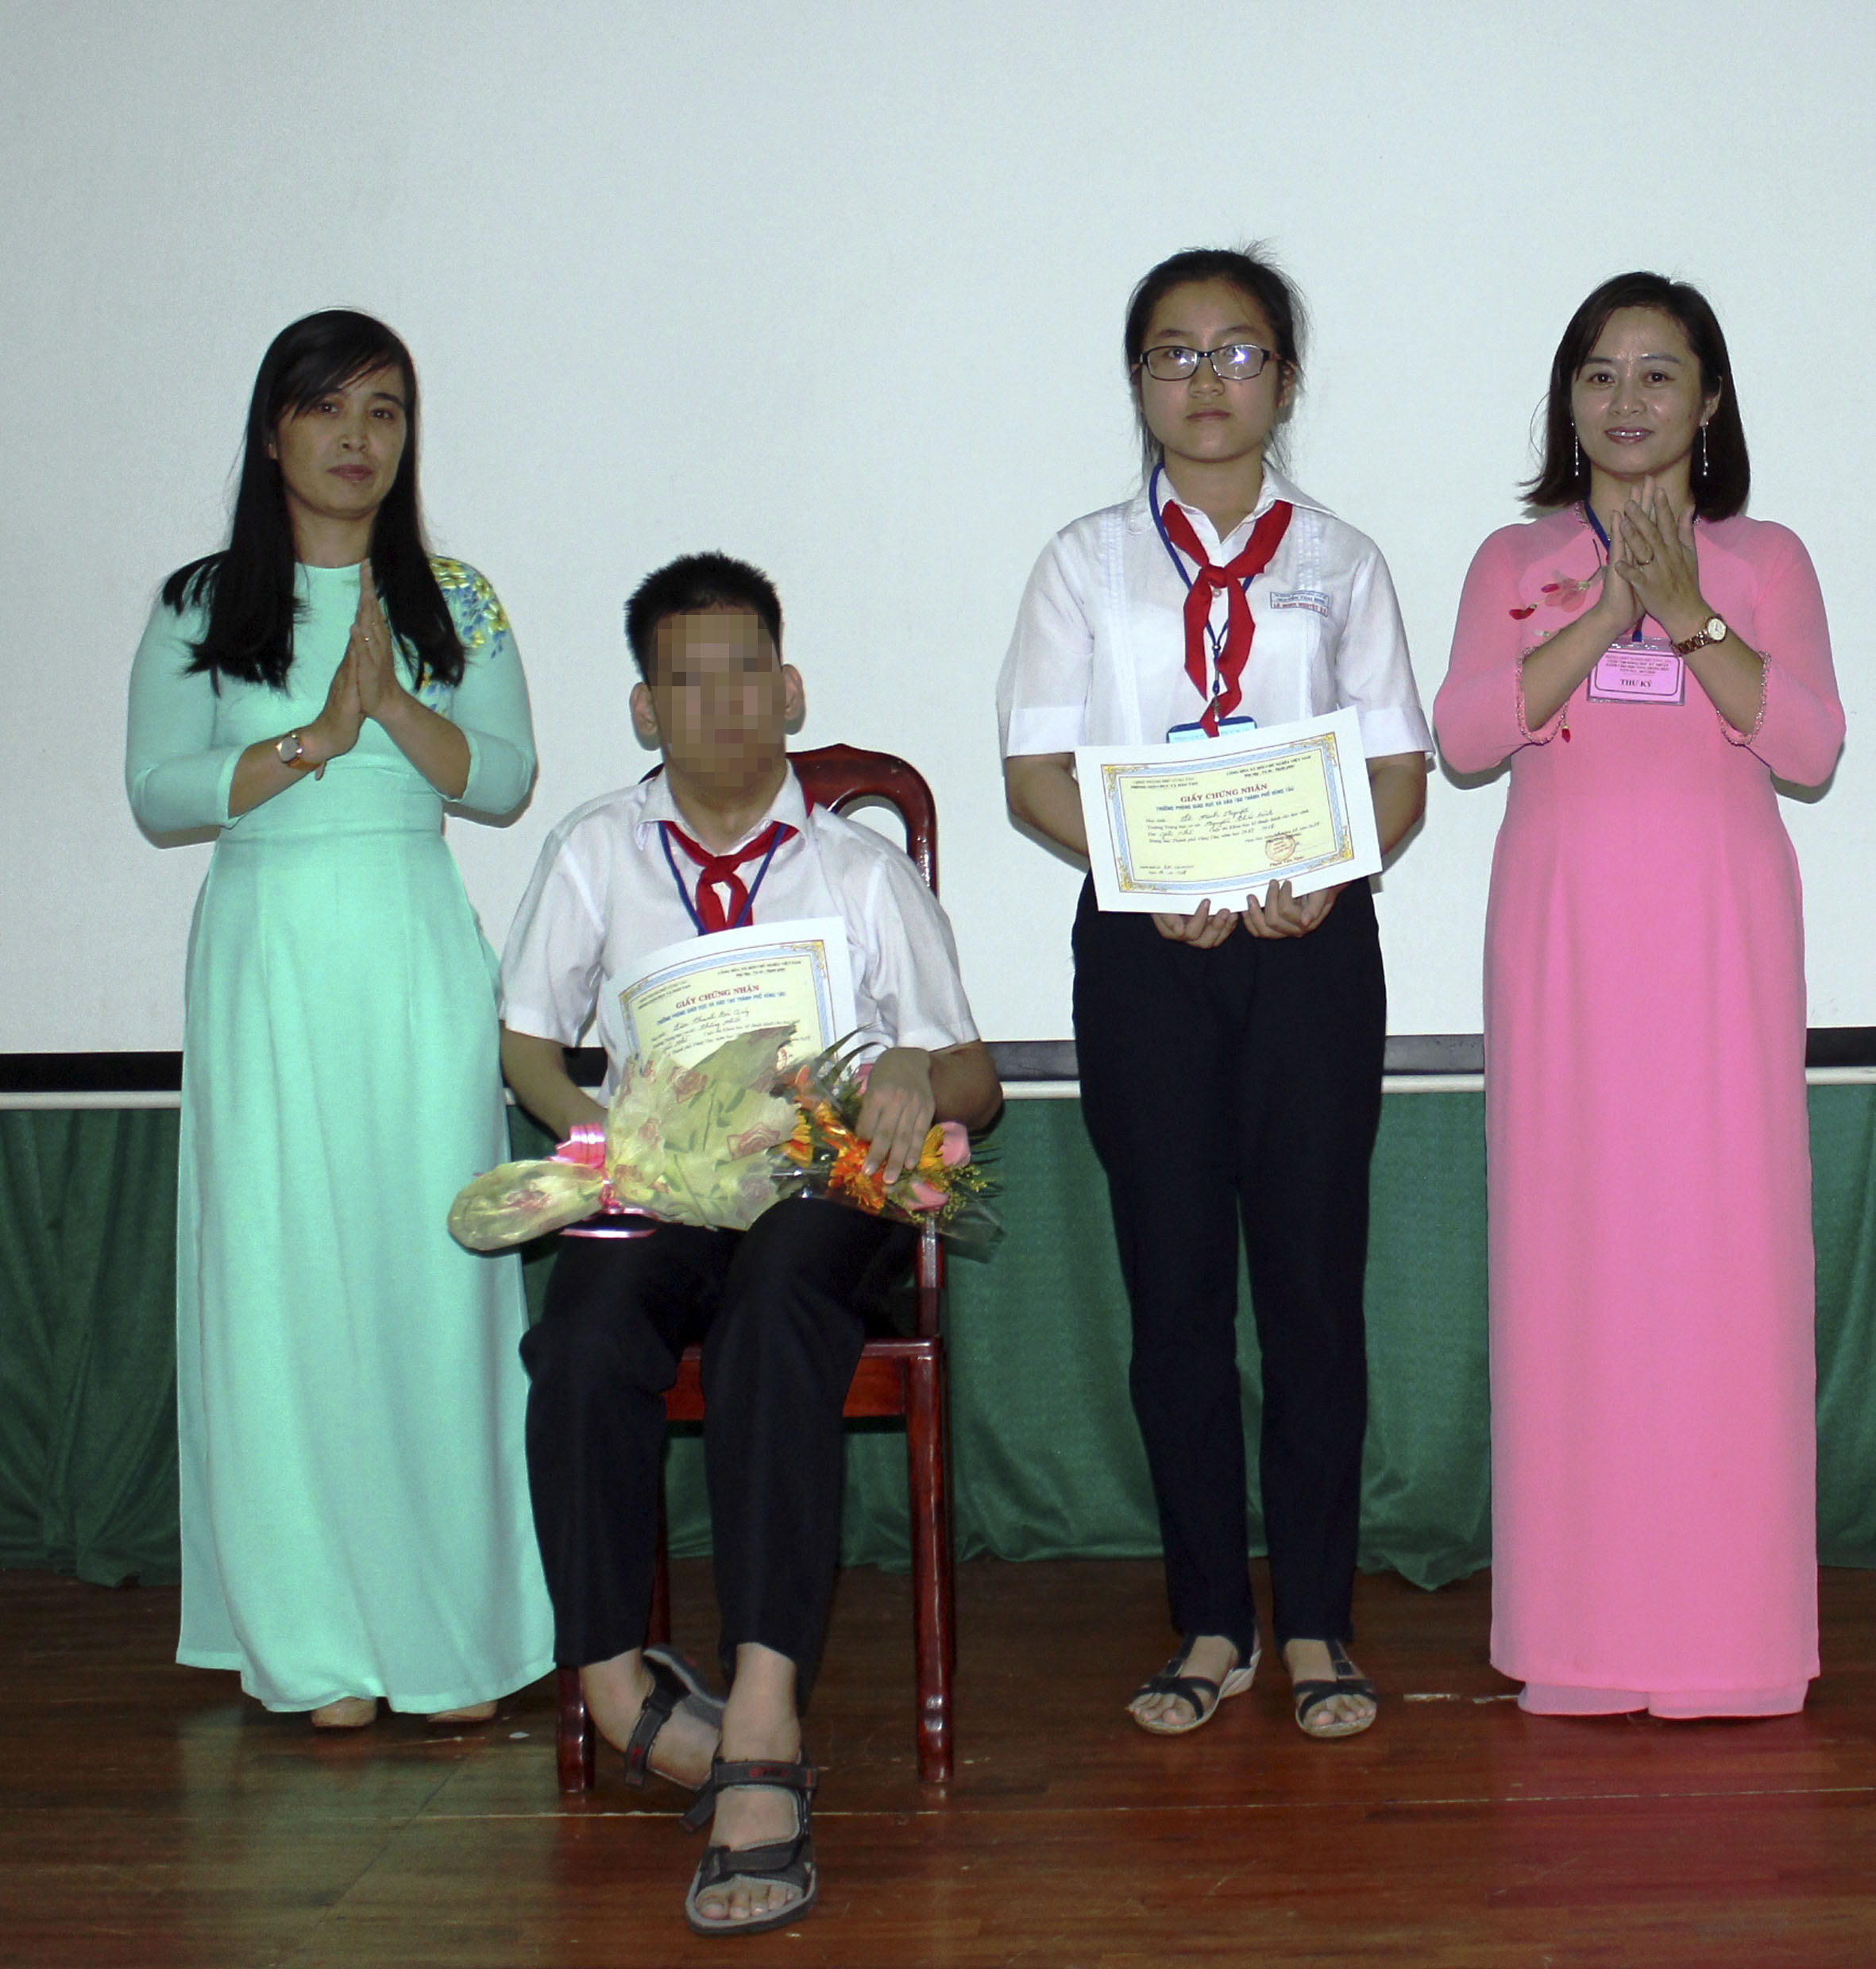 Nhiều HS khuyết tật đã có tiến bộ vượt bậc khi học hòa nhập. Trong ảnh: Em Lâm Thanh Bá Quý, cựu HS Trường THCS Thắng Nhất (TP. Vũng Tàu) tham gia cuộc thi Khoa học kỹ thuật cấp thành phố.